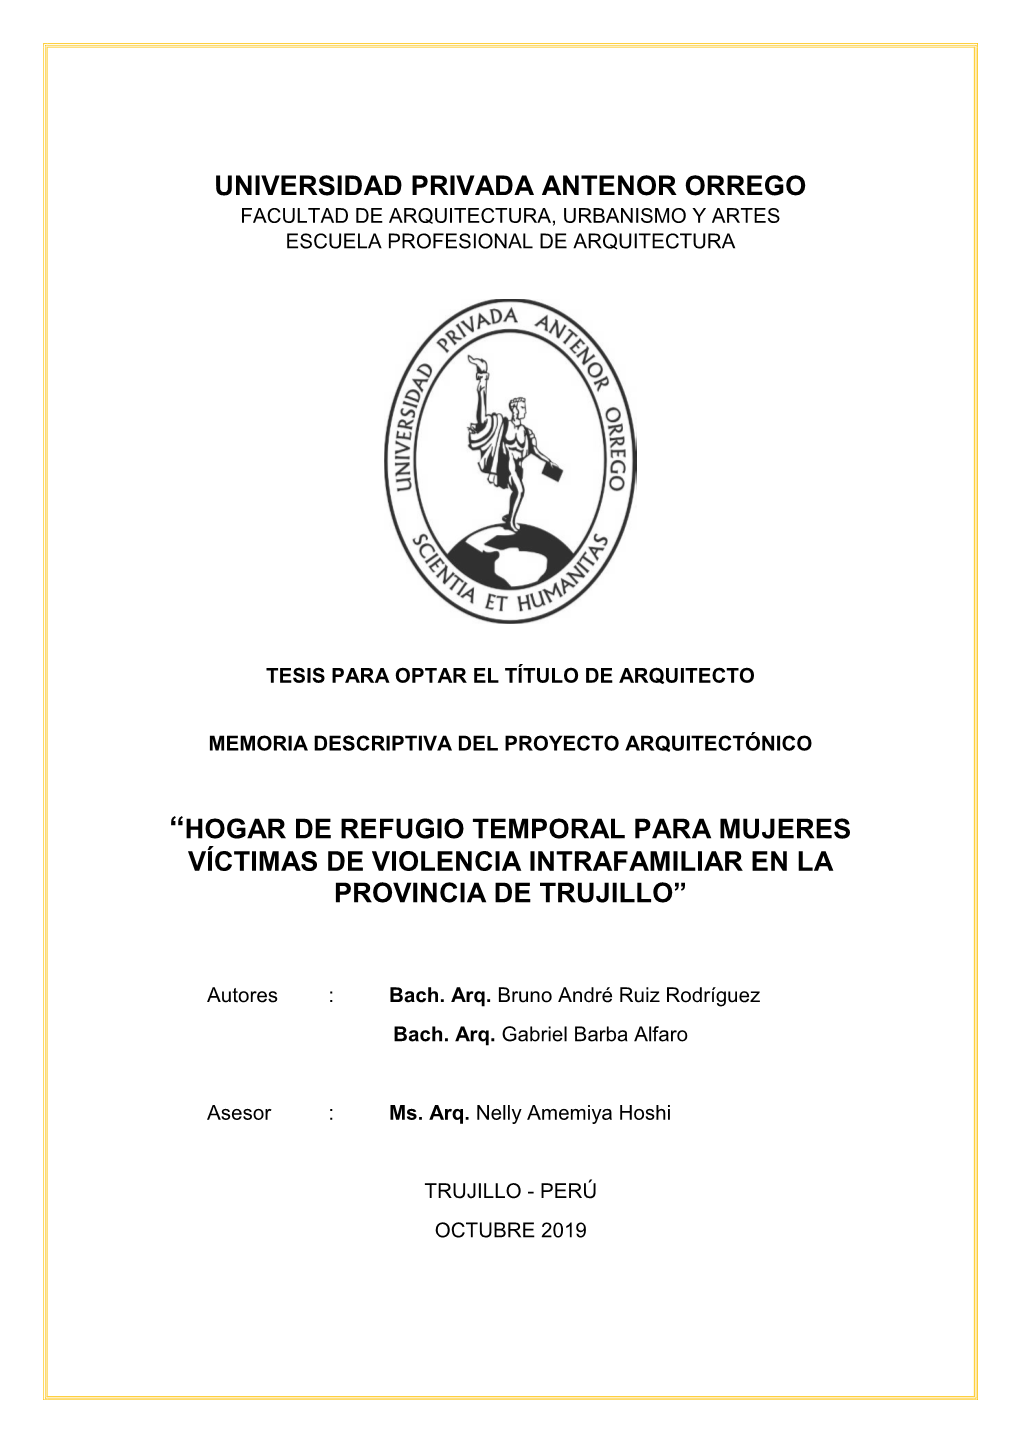 Hogar De Refugio Temporal Para Mujeres Víctimas De Violencia Intrafamiliar En La Provincia De Trujillo”